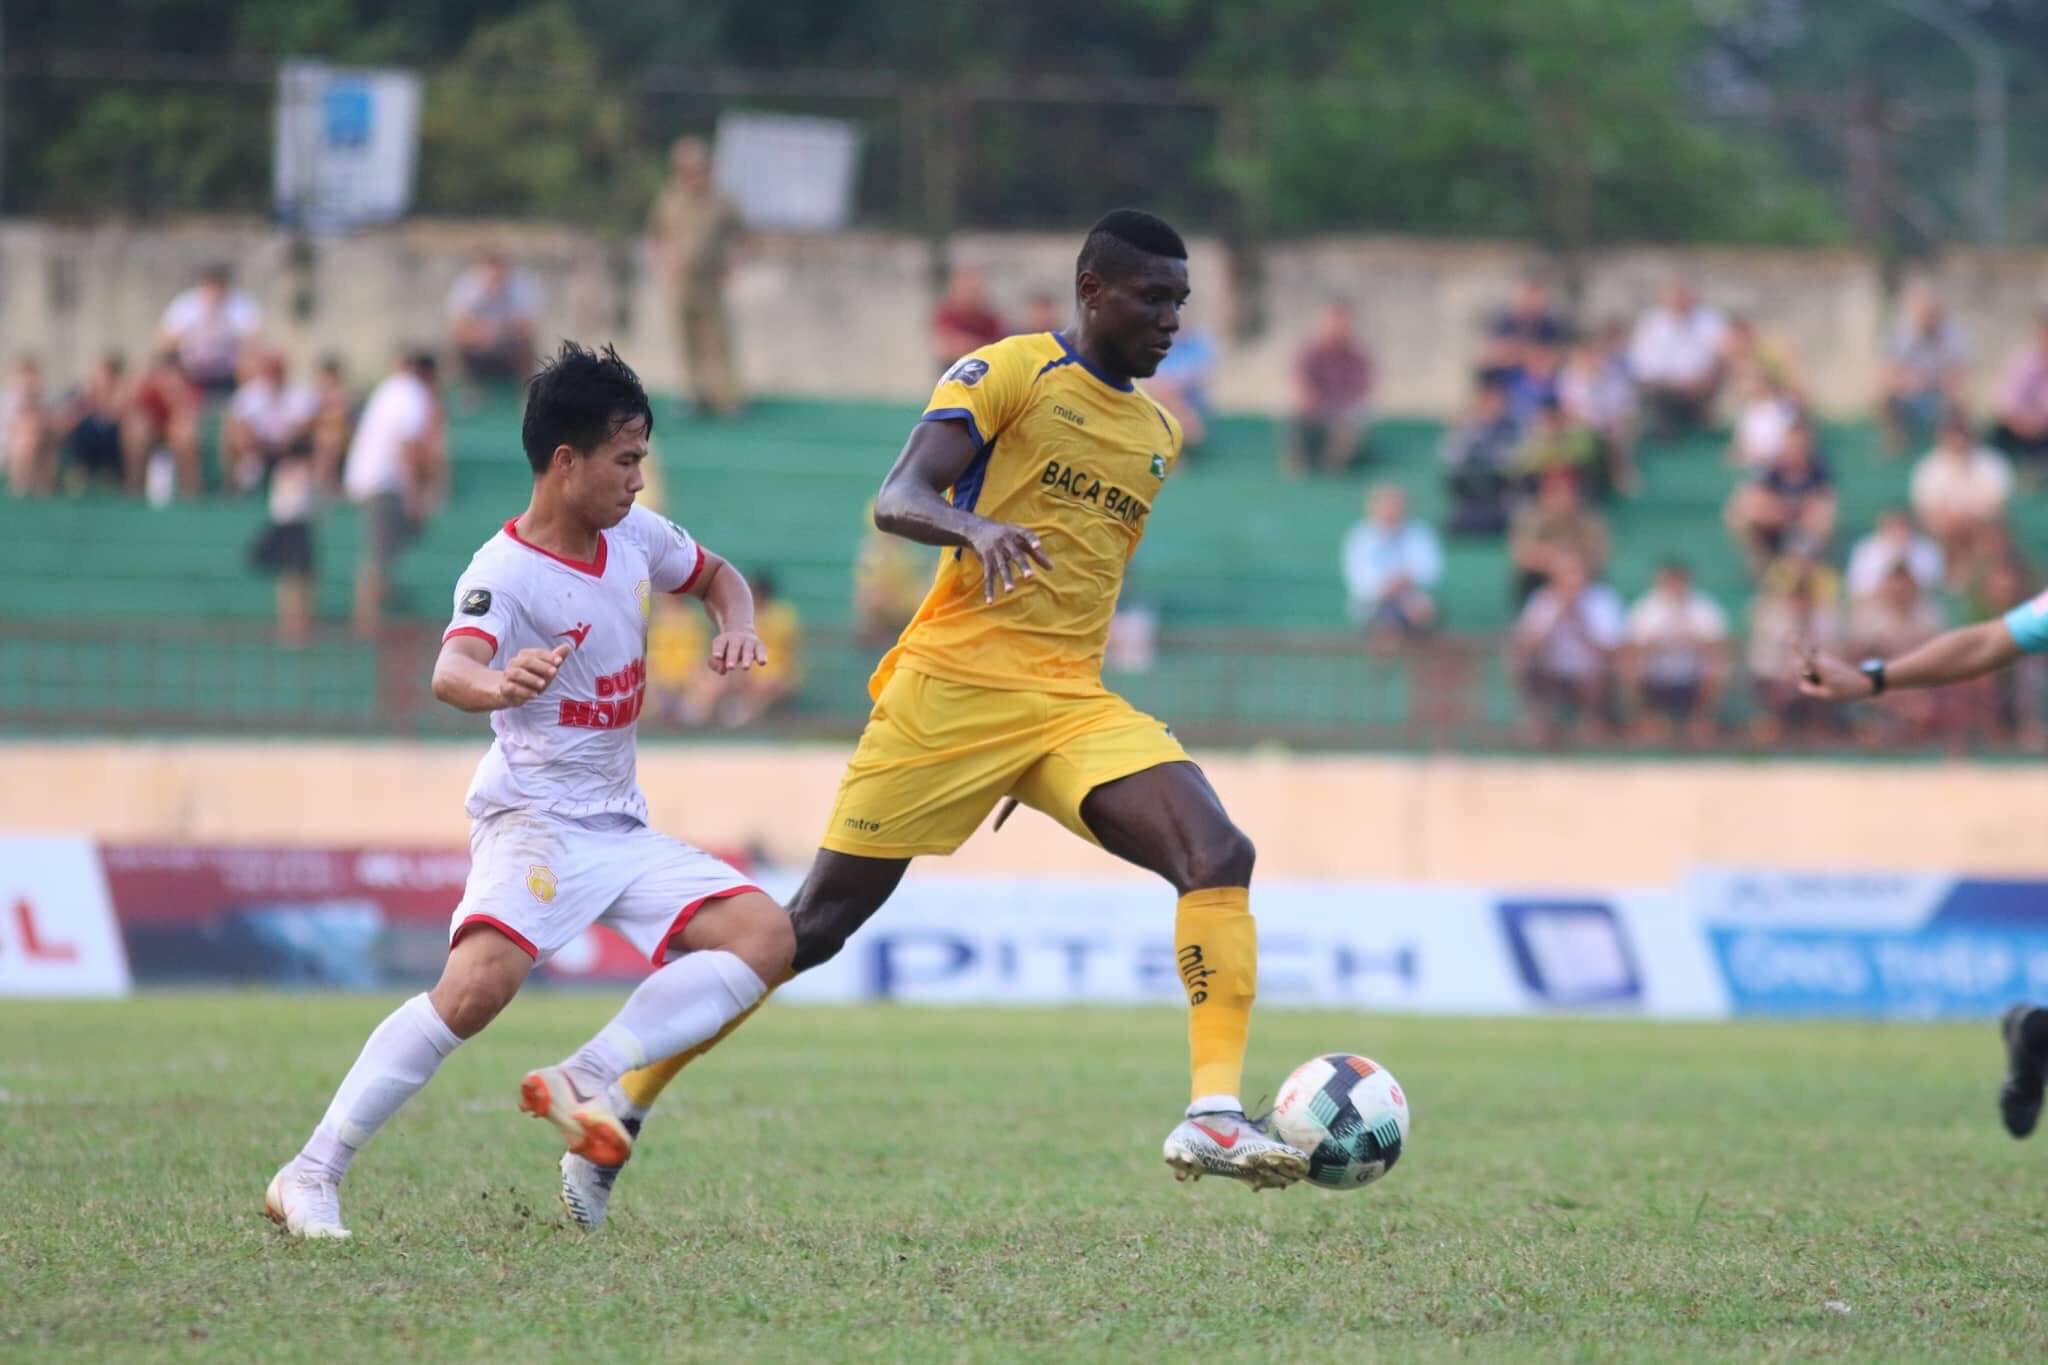 HLV Nam Định chỉ ra yếu tố giúp đội nhà cầm hòa ngay trên sân SLNA 